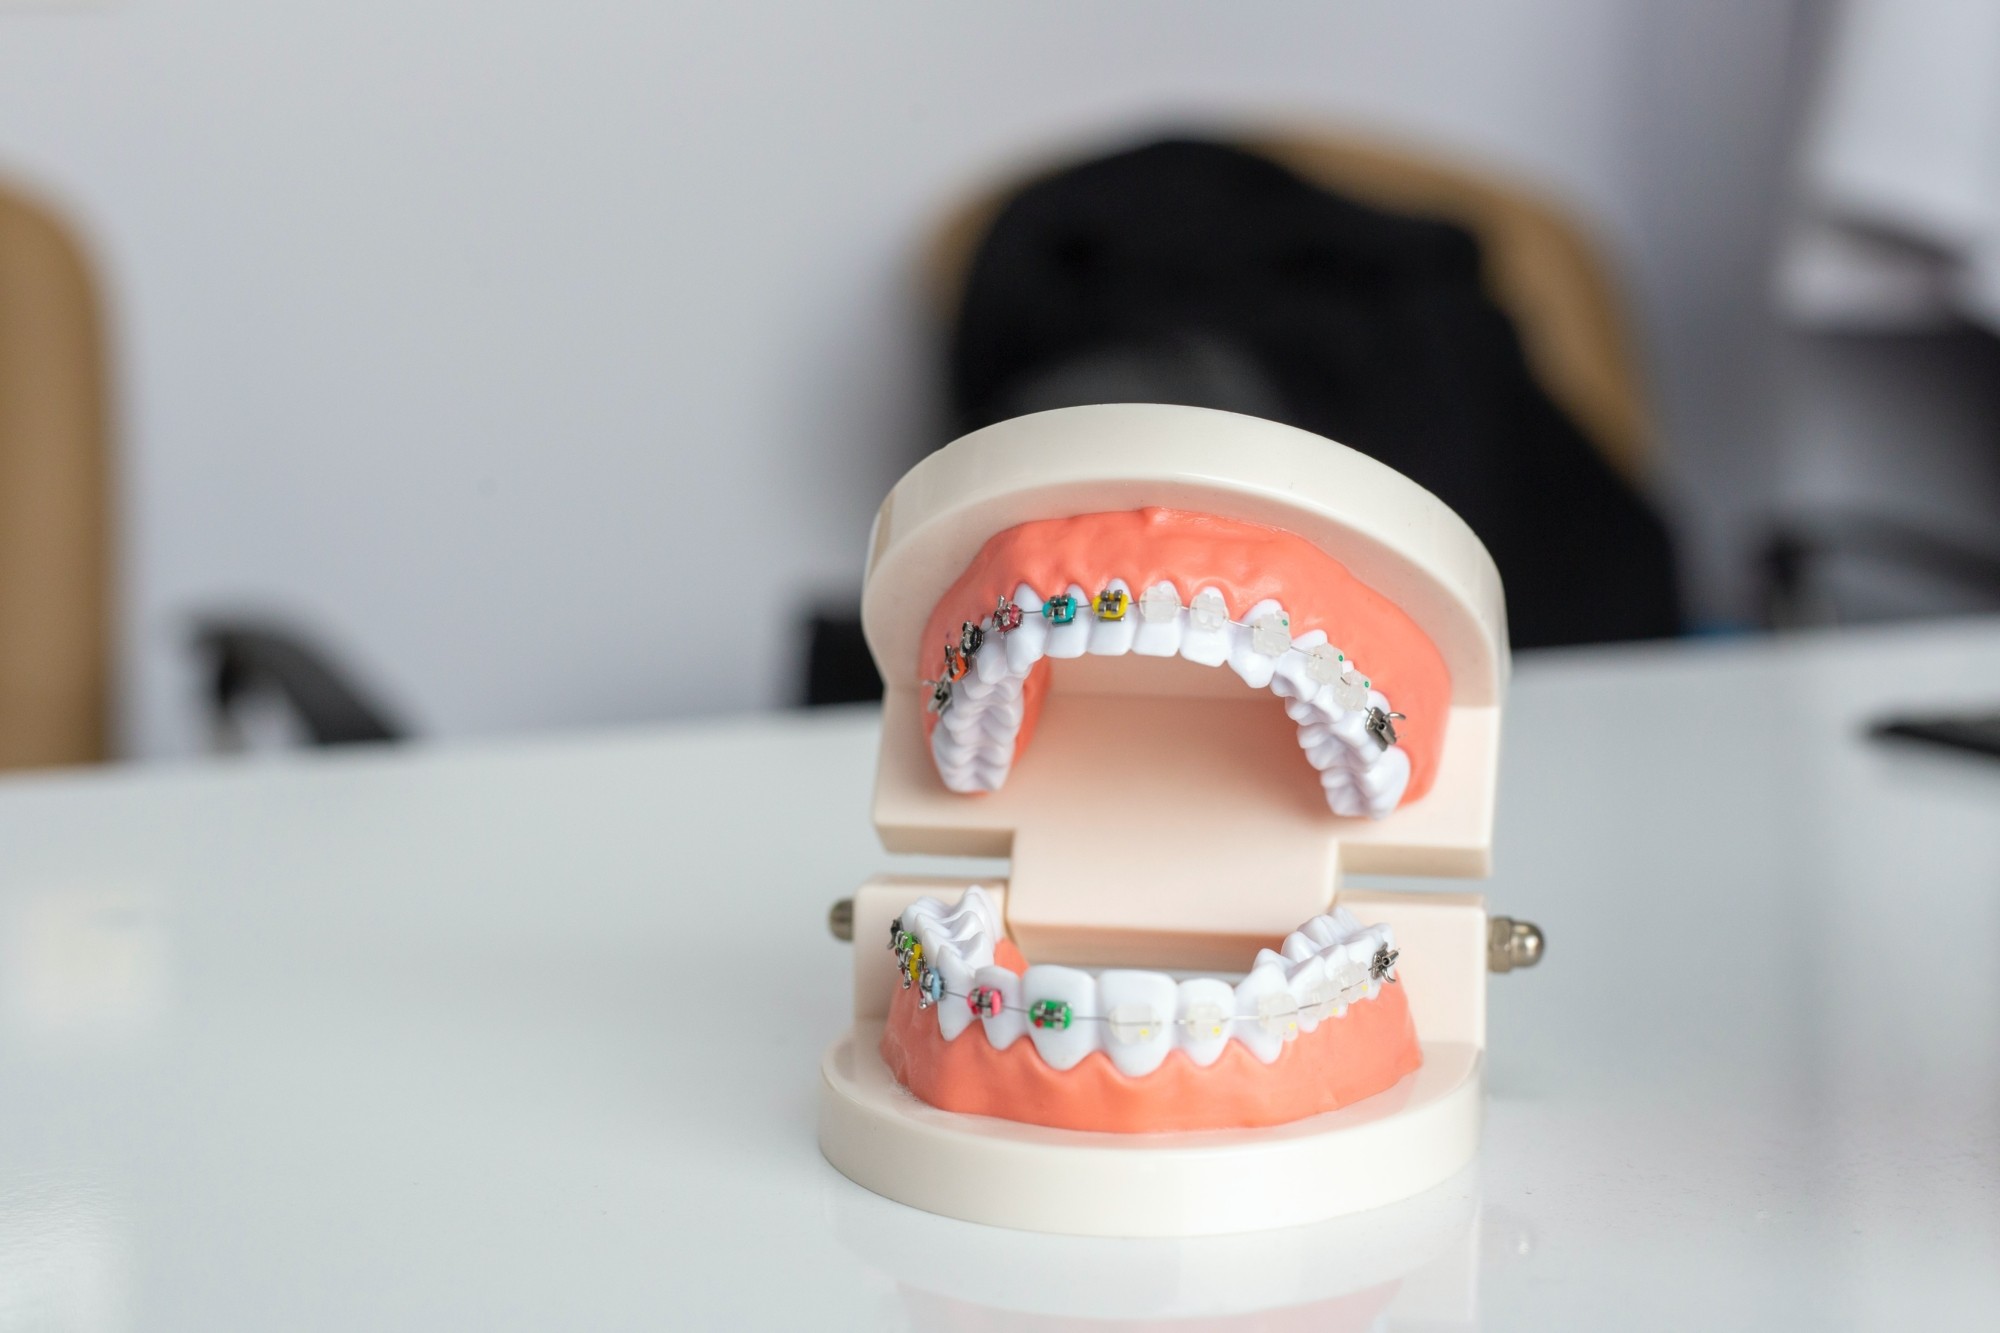 Dantų protezavimas – individualiai pritaikytas dantų atkūrimas suteiks galimybę džiaugtis puikia šypsena